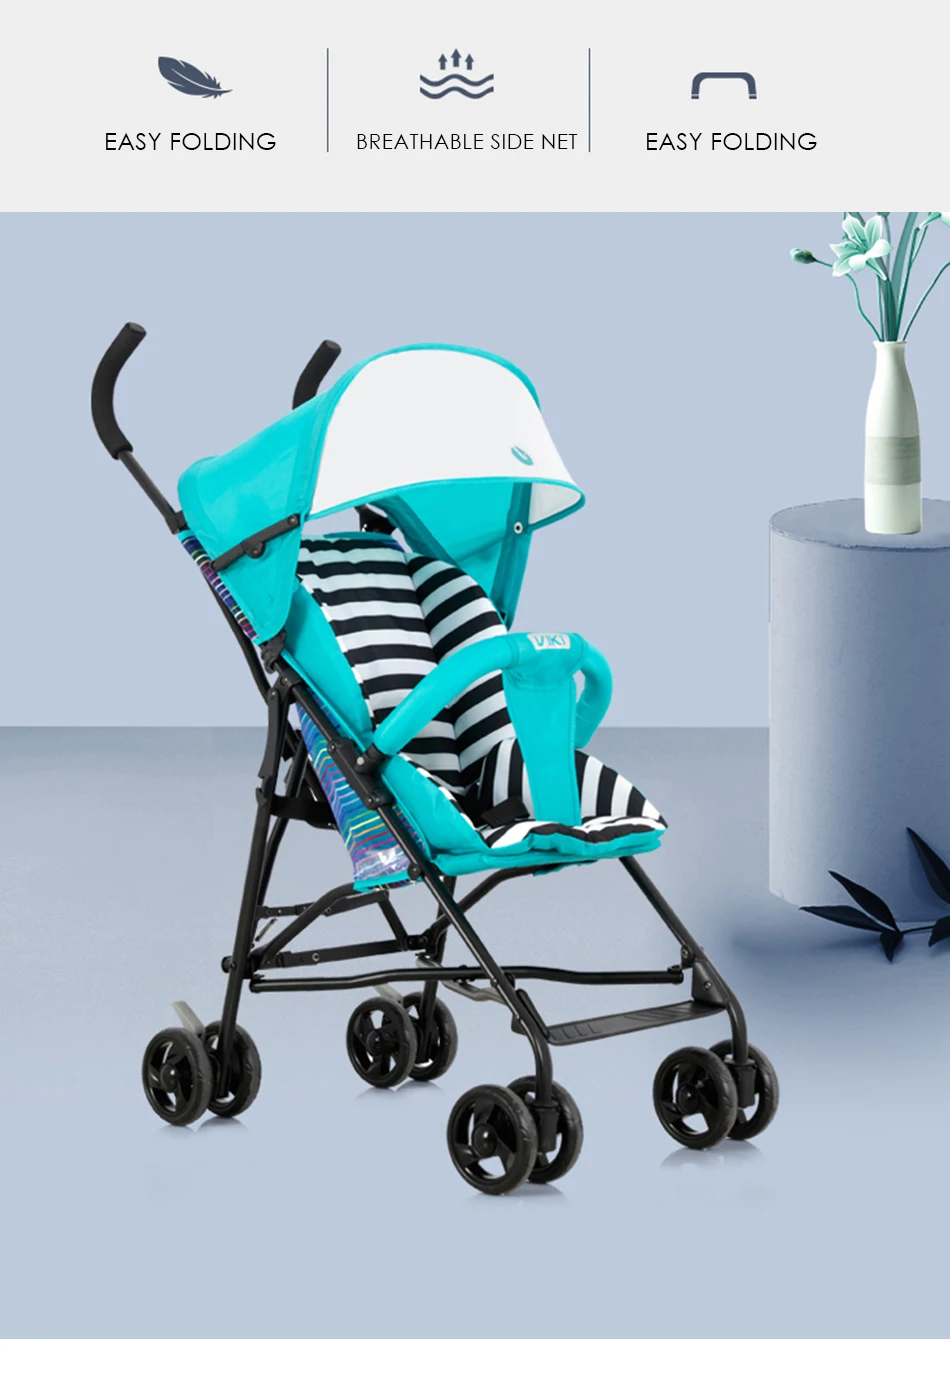 Светильник VIKI, вес 5 кг, детская коляска, портативный зонт, коляска, светильник, для путешествий, коляска, удобная, легко складывается, детская коляска